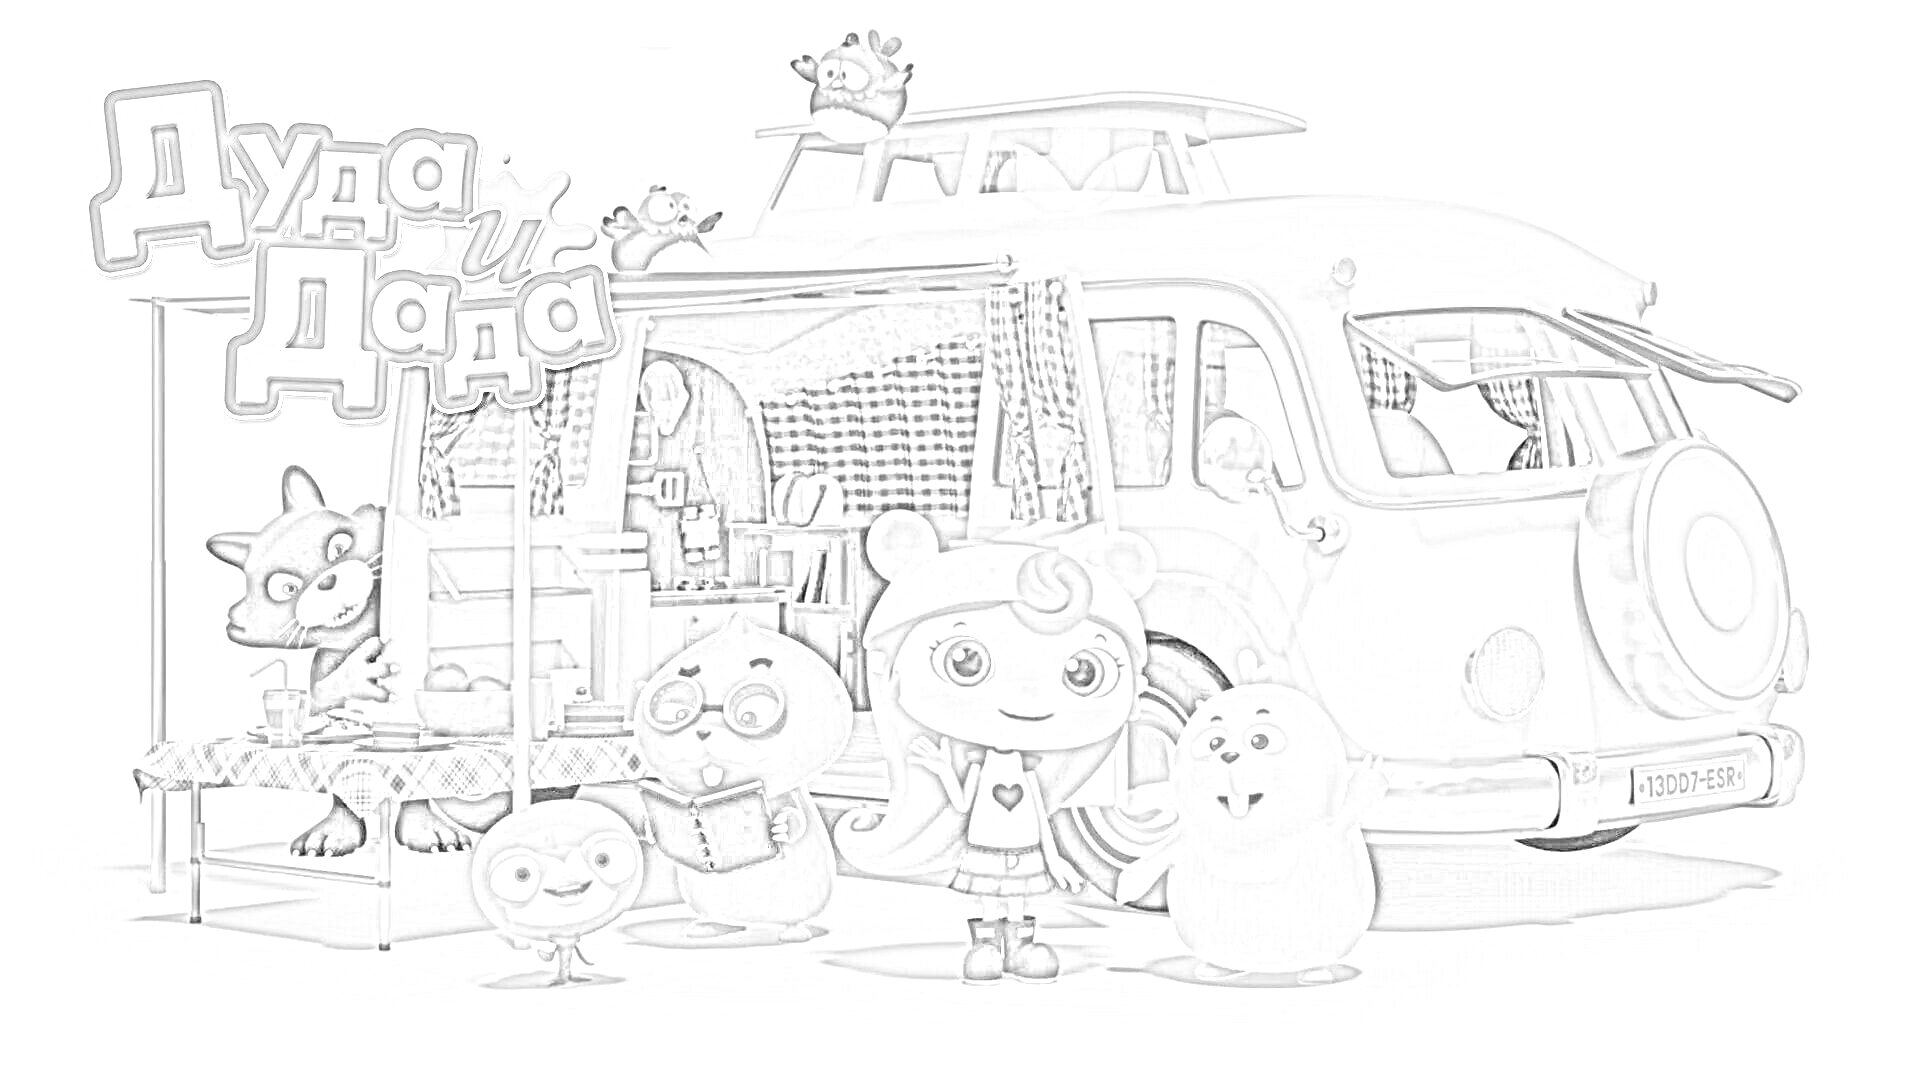 Раскраска Герои Дуда и Дада рядом с фургоном, черная кошка, трое животных: голубого, желтого и серого цвета, девочка с рыжими волосами и розовой шапкой, розово-белый фургон